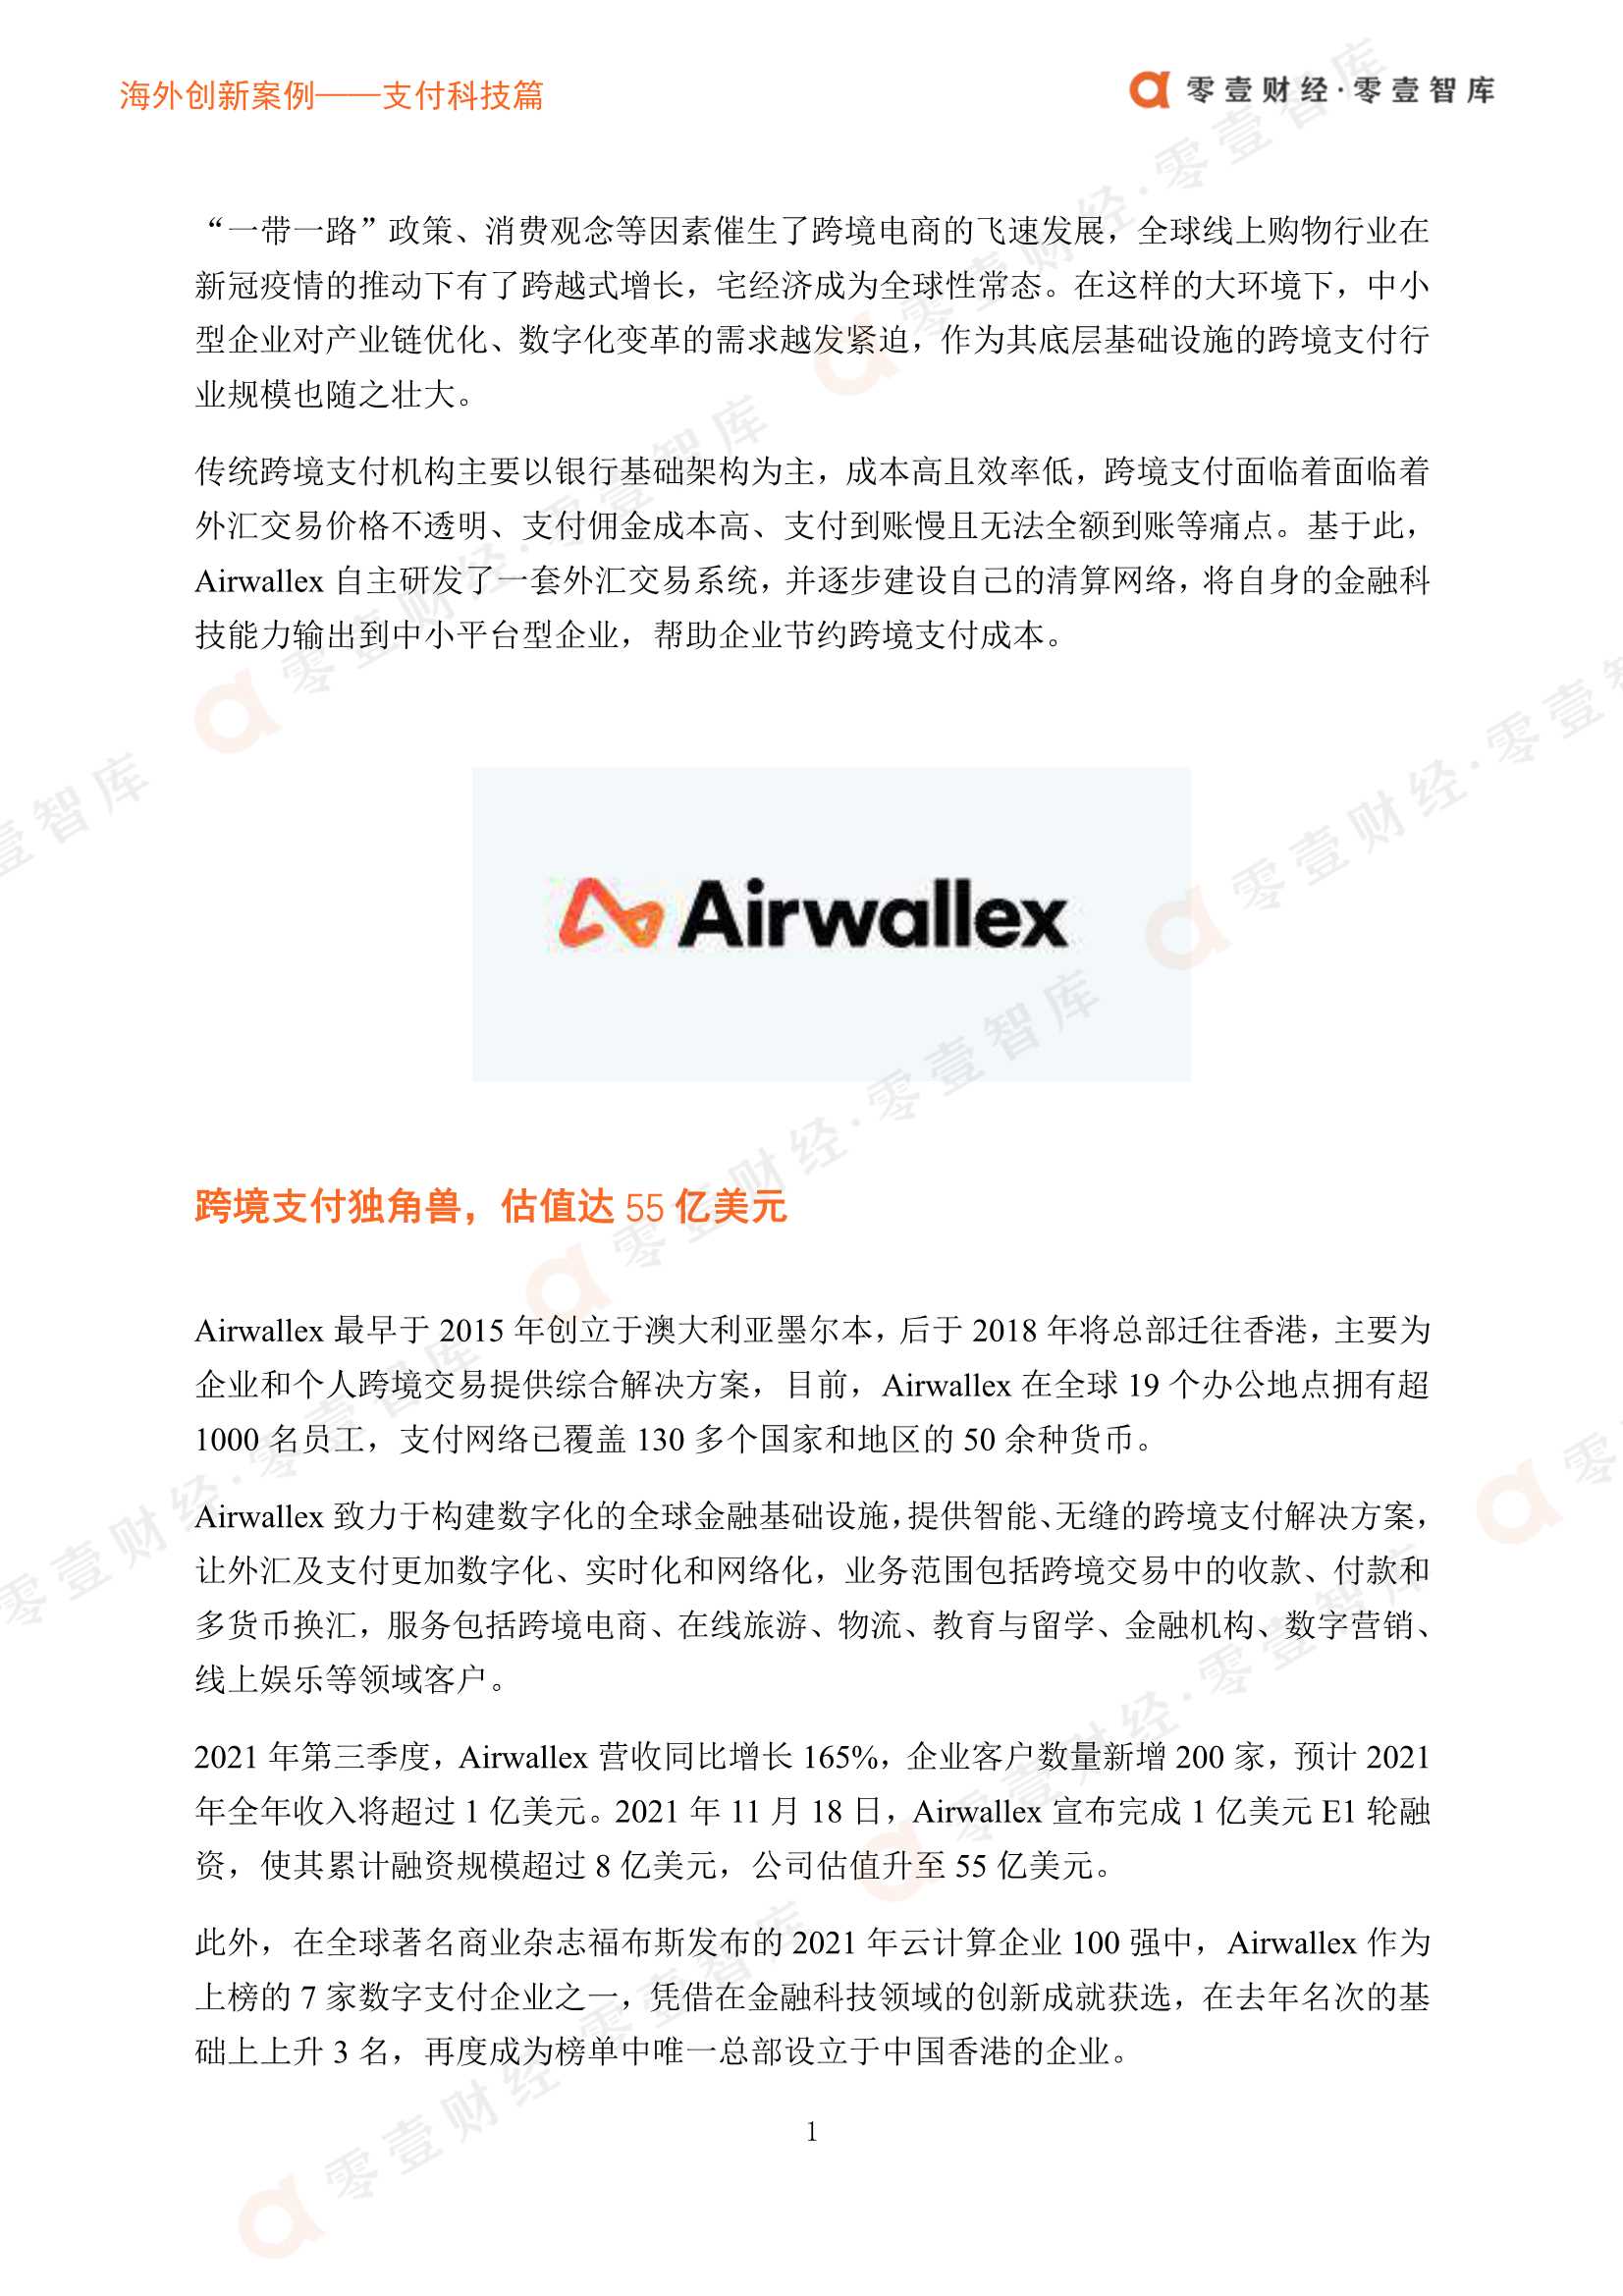 零壹智库-海外创新案例 Airwallex：打造跨境支付一体化平台，助力全球卖家快速出海-2021.11-8页